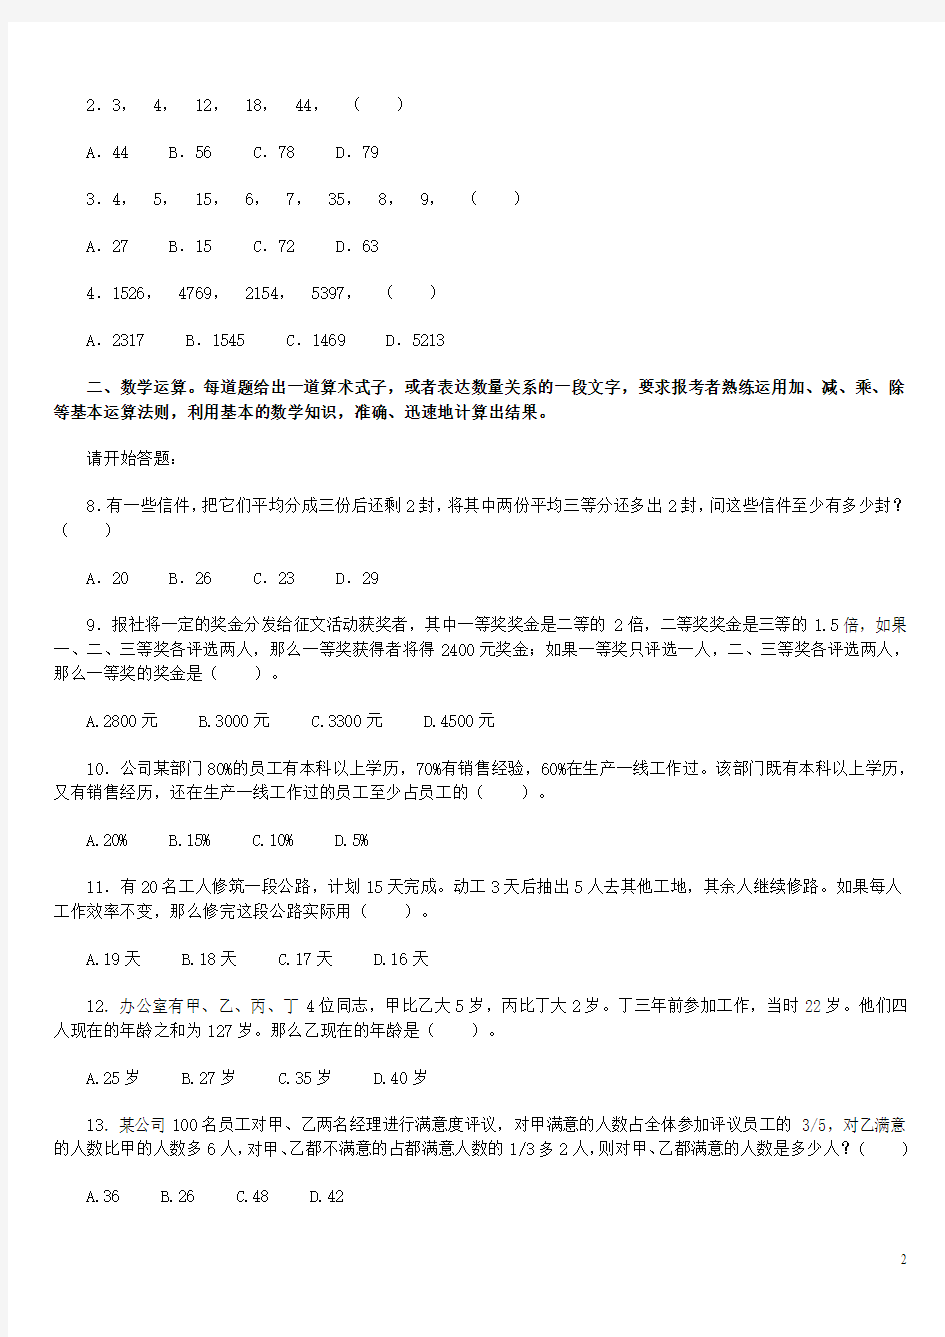 2010年广东省公务员考试行测真题及解析